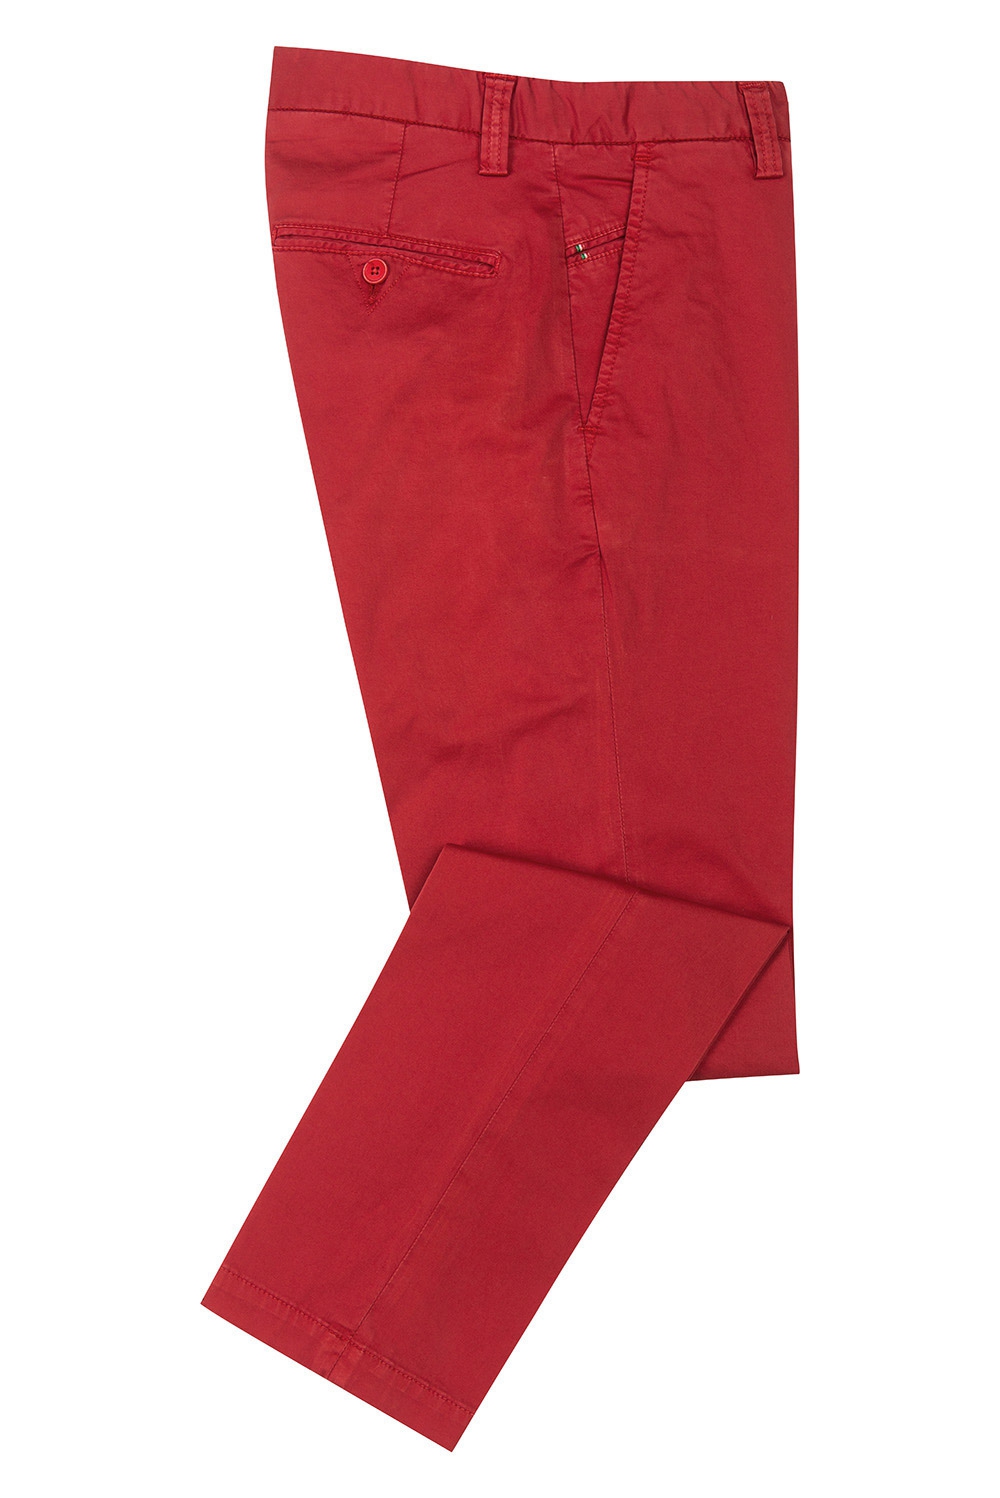 Pantaloni  slim rosii uni 1